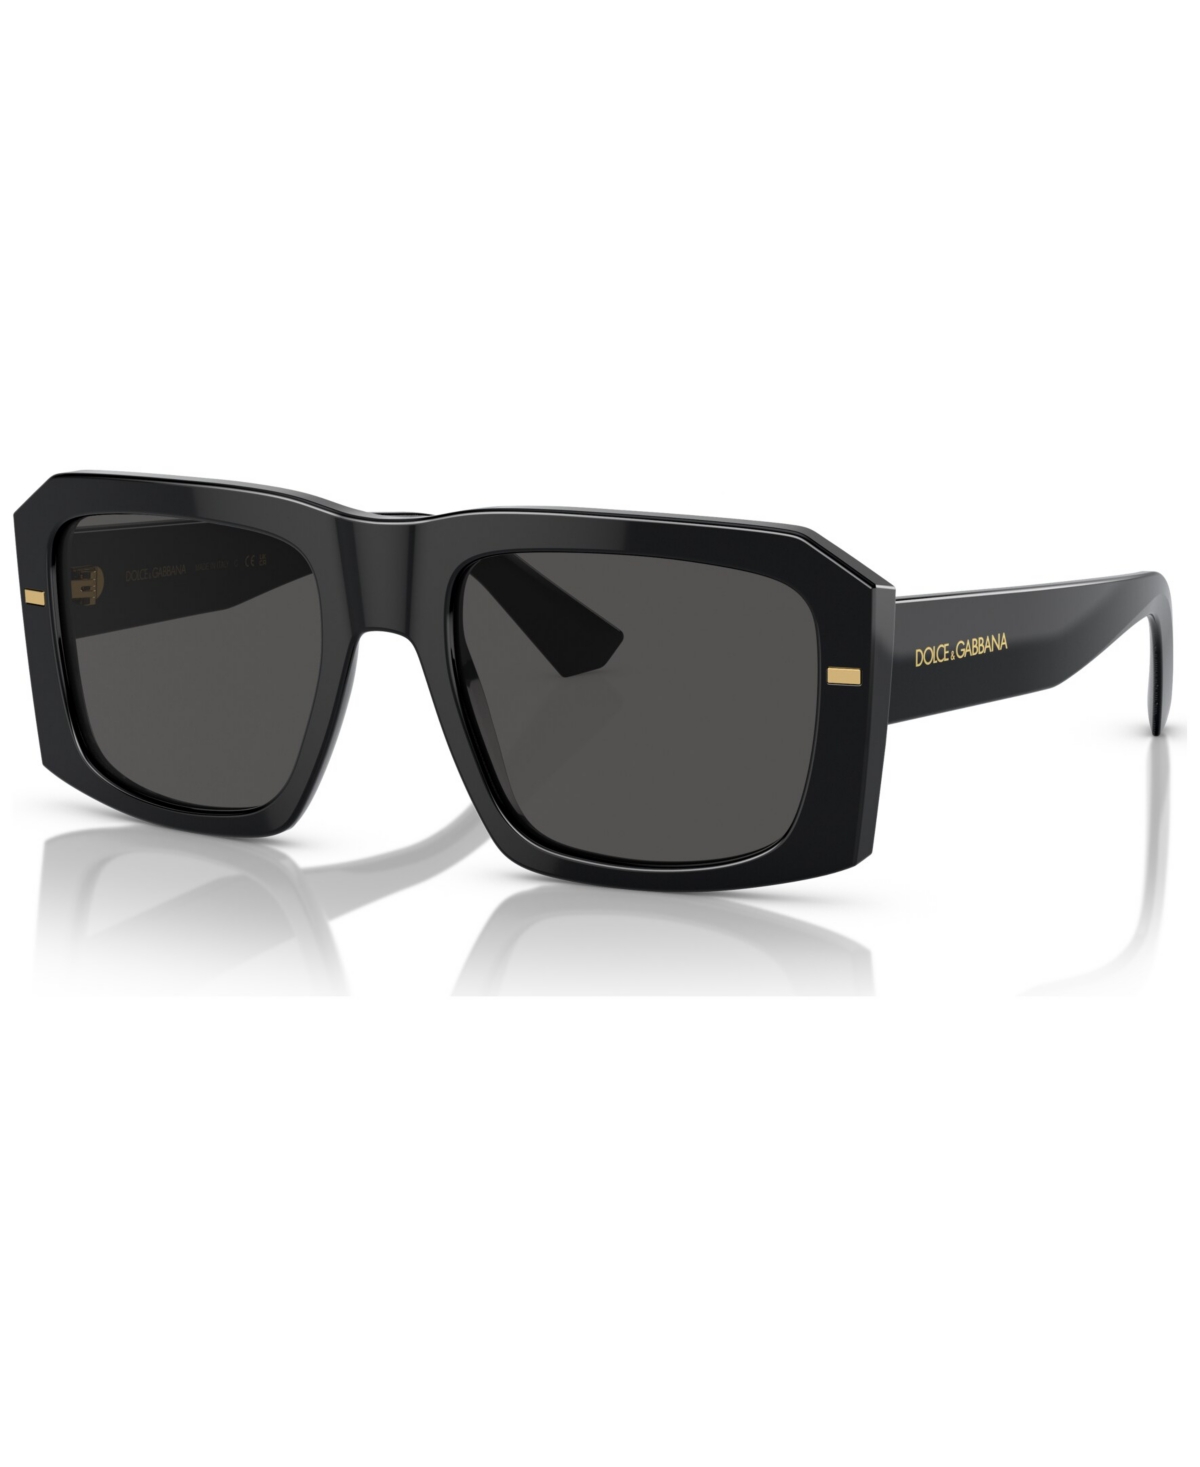 Dolce & Gabbana Men's Sunglasses, Dg4430 In Black